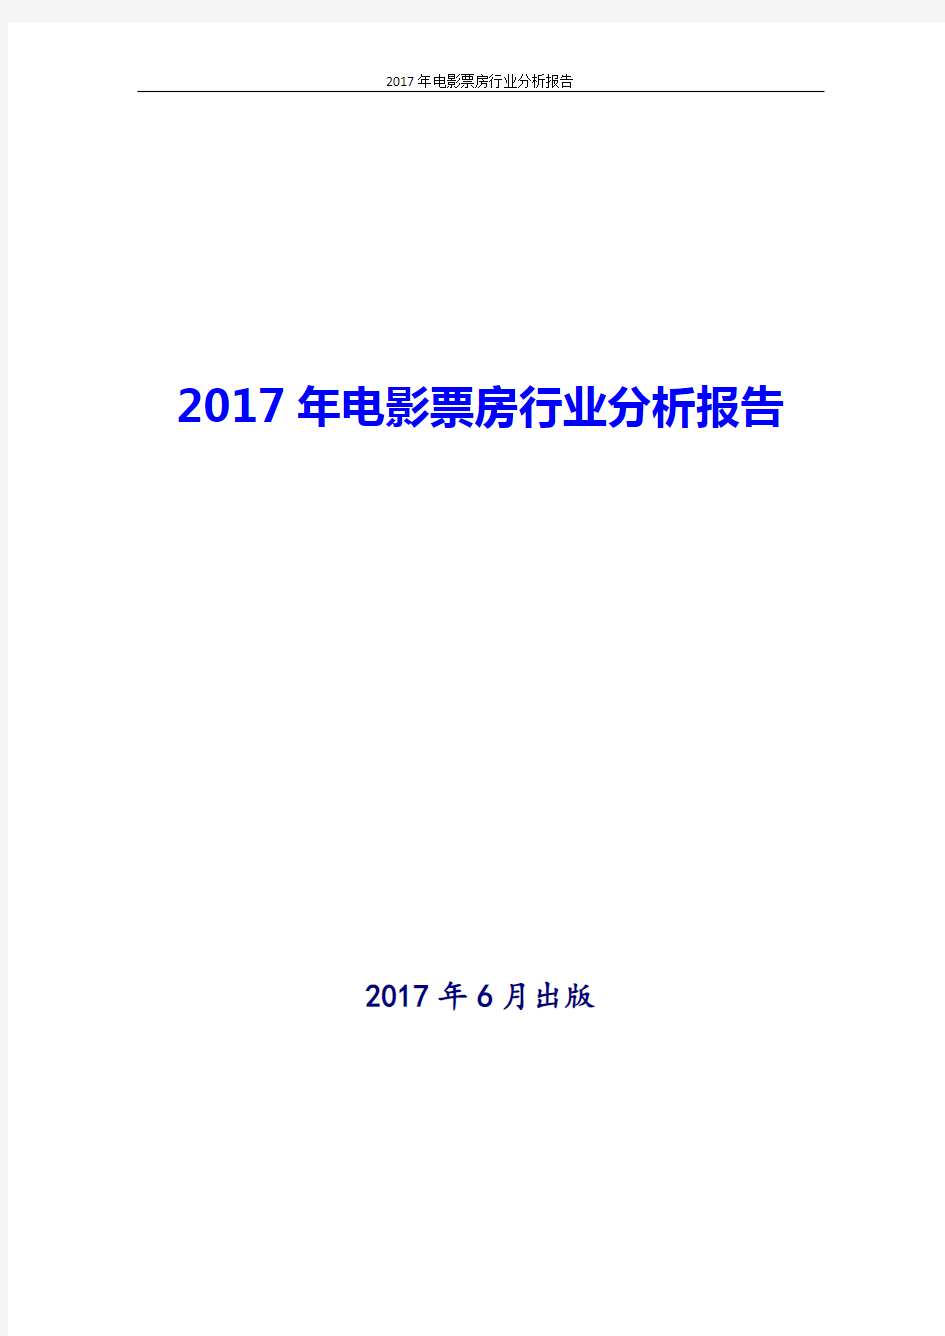 2017年最新版中国电影票房行业分析报告